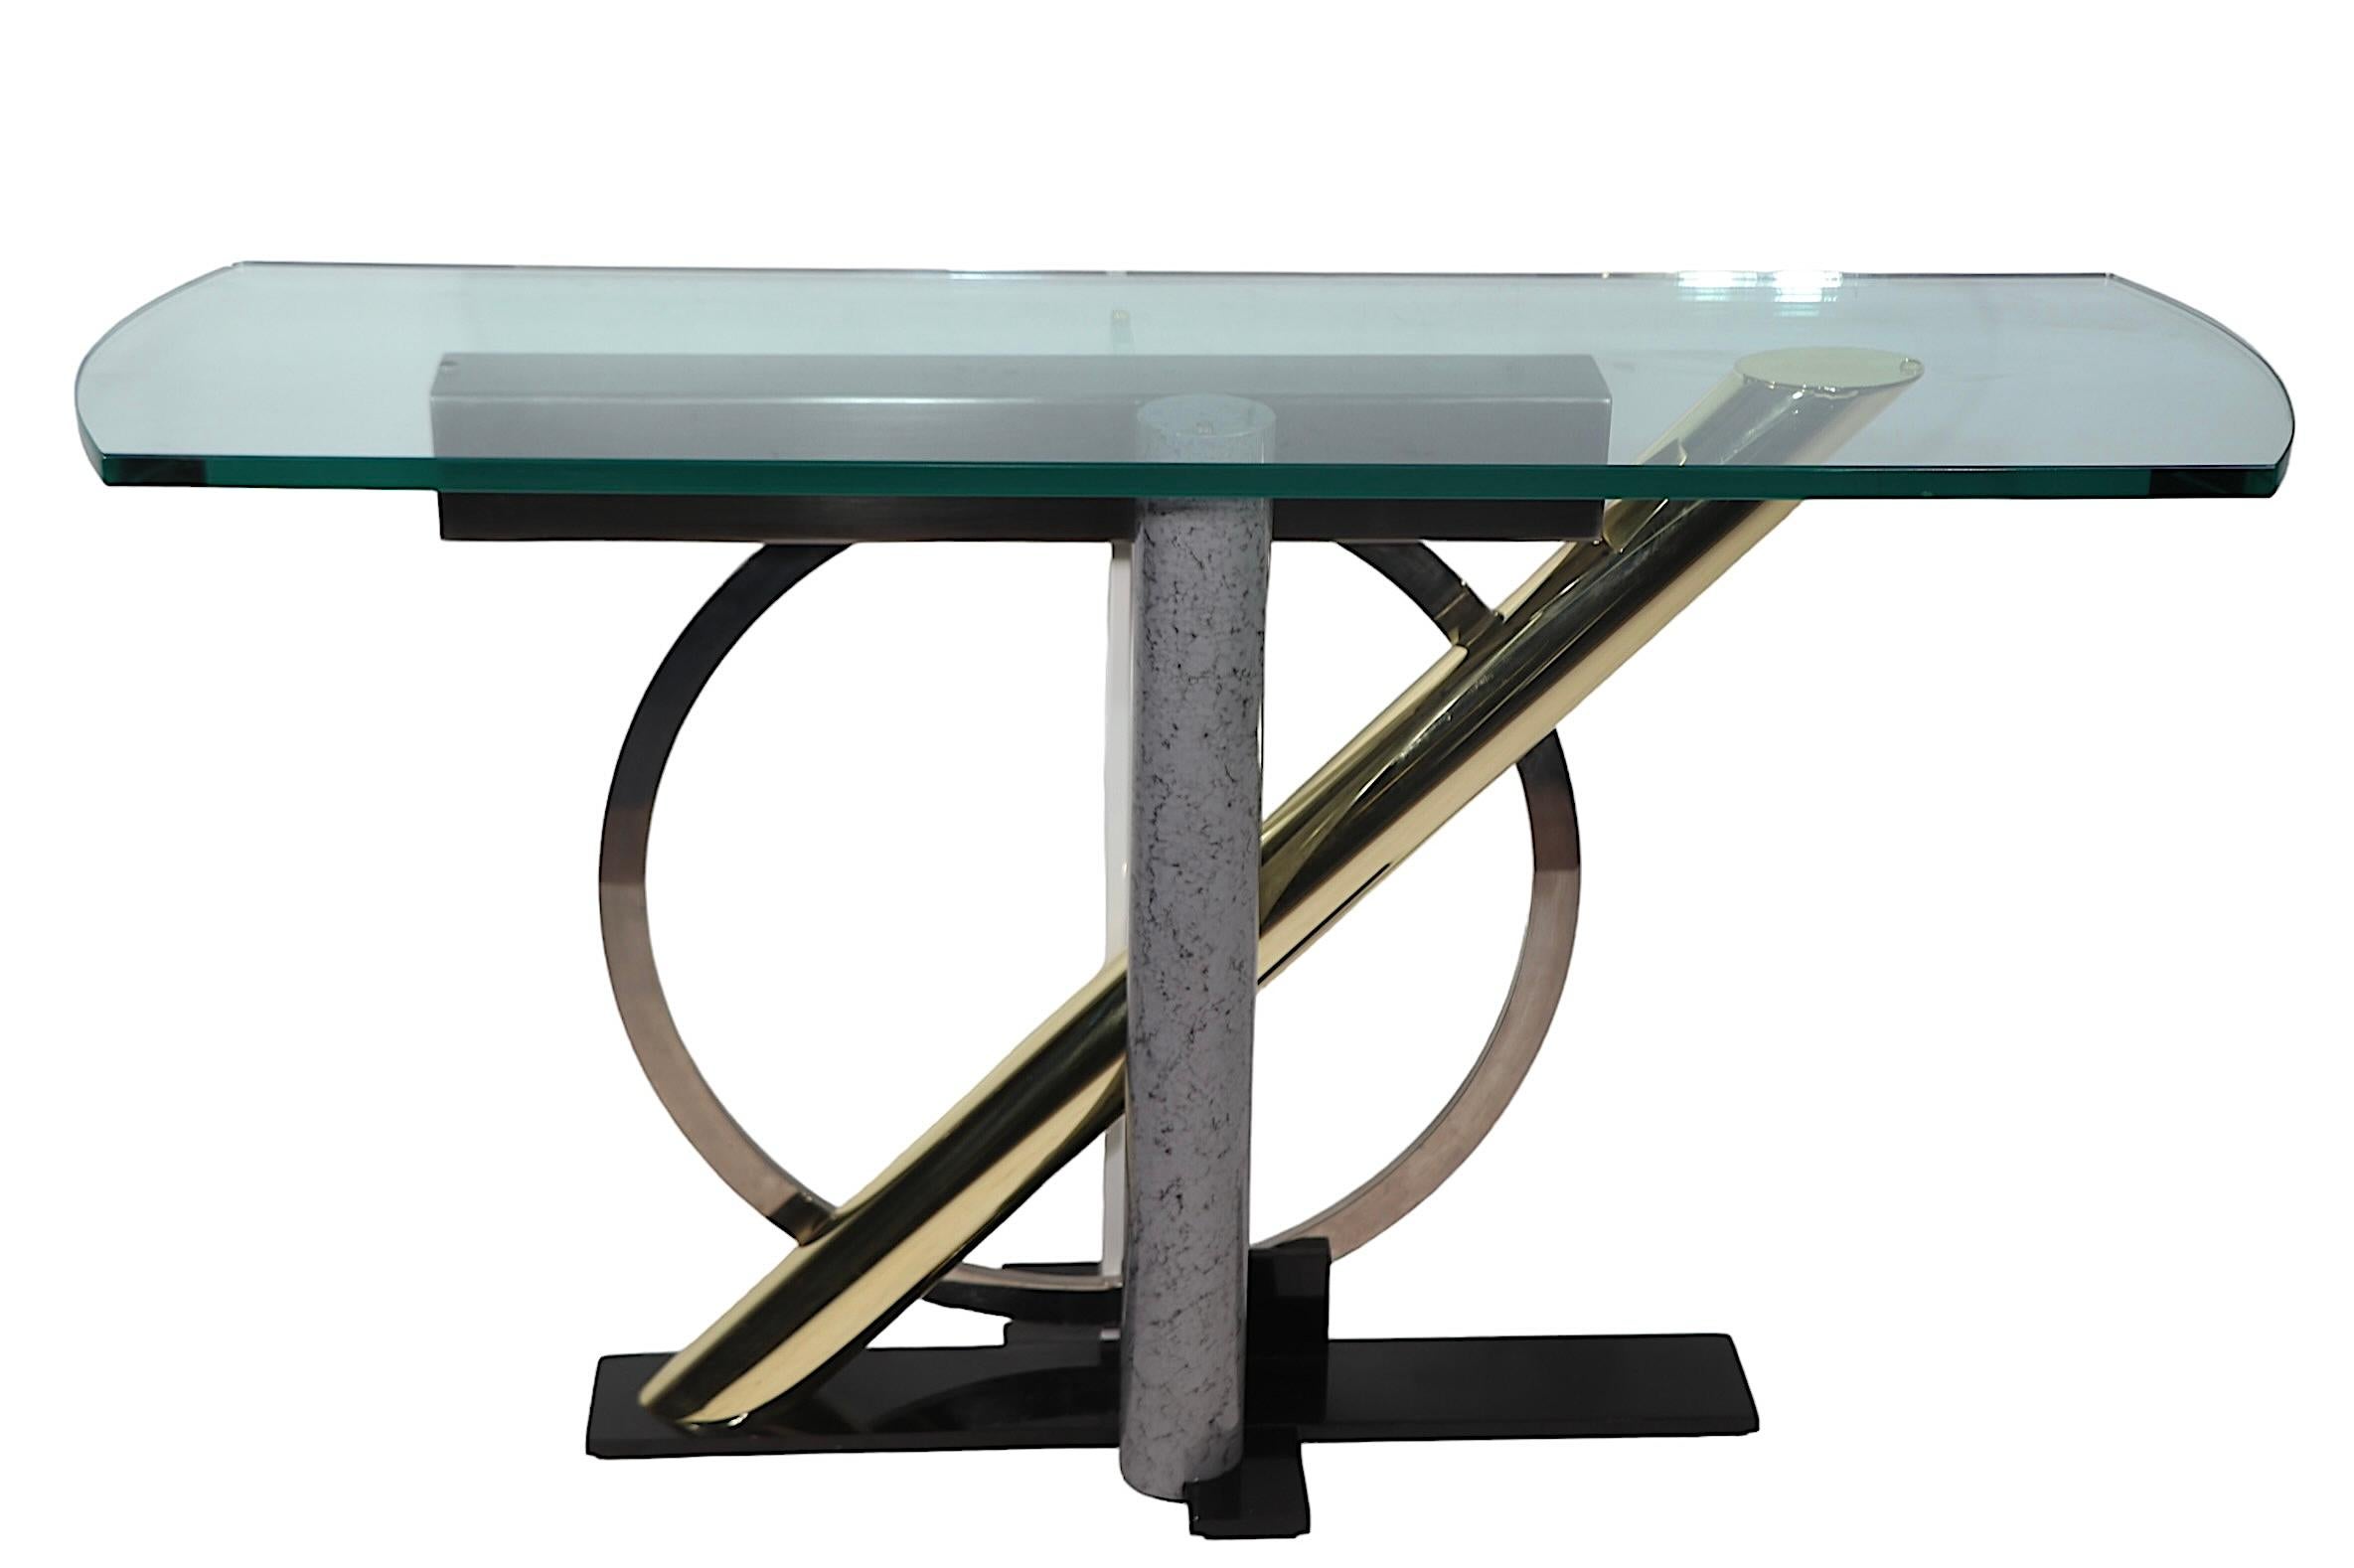 Ikonischer Post-Modern-Design-Konsolentisch von Kaizo Oto für das Design Institute America, ca. 1980er Jahre. Der Tisch verfügt über eine dicke, geformte Glasplatte, die auf einem stilisierten Sockel aus gemischtem Metall ruht. Dieses Exemplar